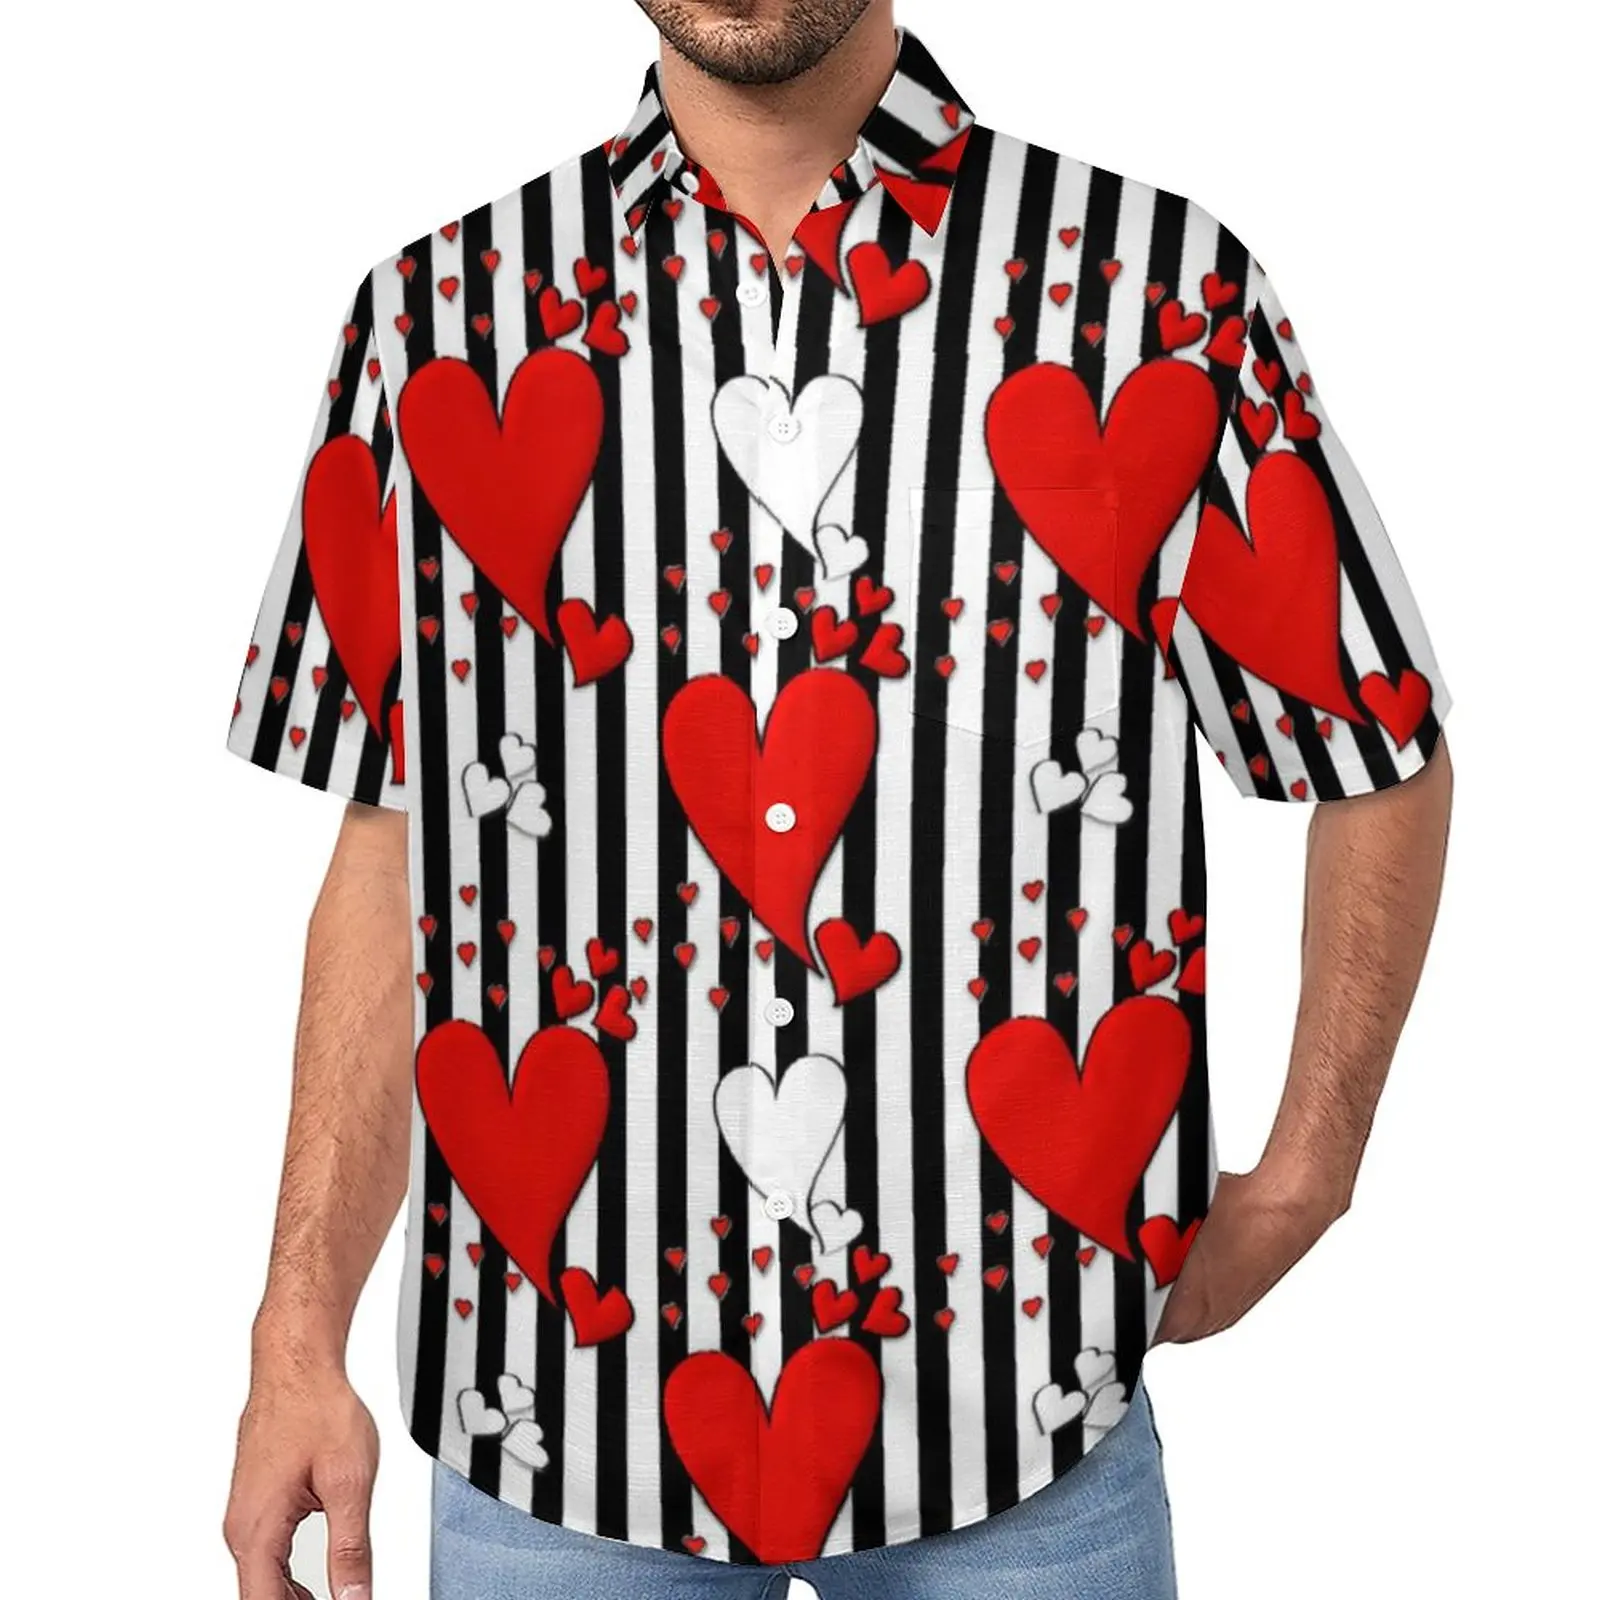 

Пляжная рубашка в черную полоску с принтом сердца на День святого Валентина, Гавайские повседневные рубашки, мужские забавные Блузы с коротким рукавом, дизайнерская одежда 3XL 4XL